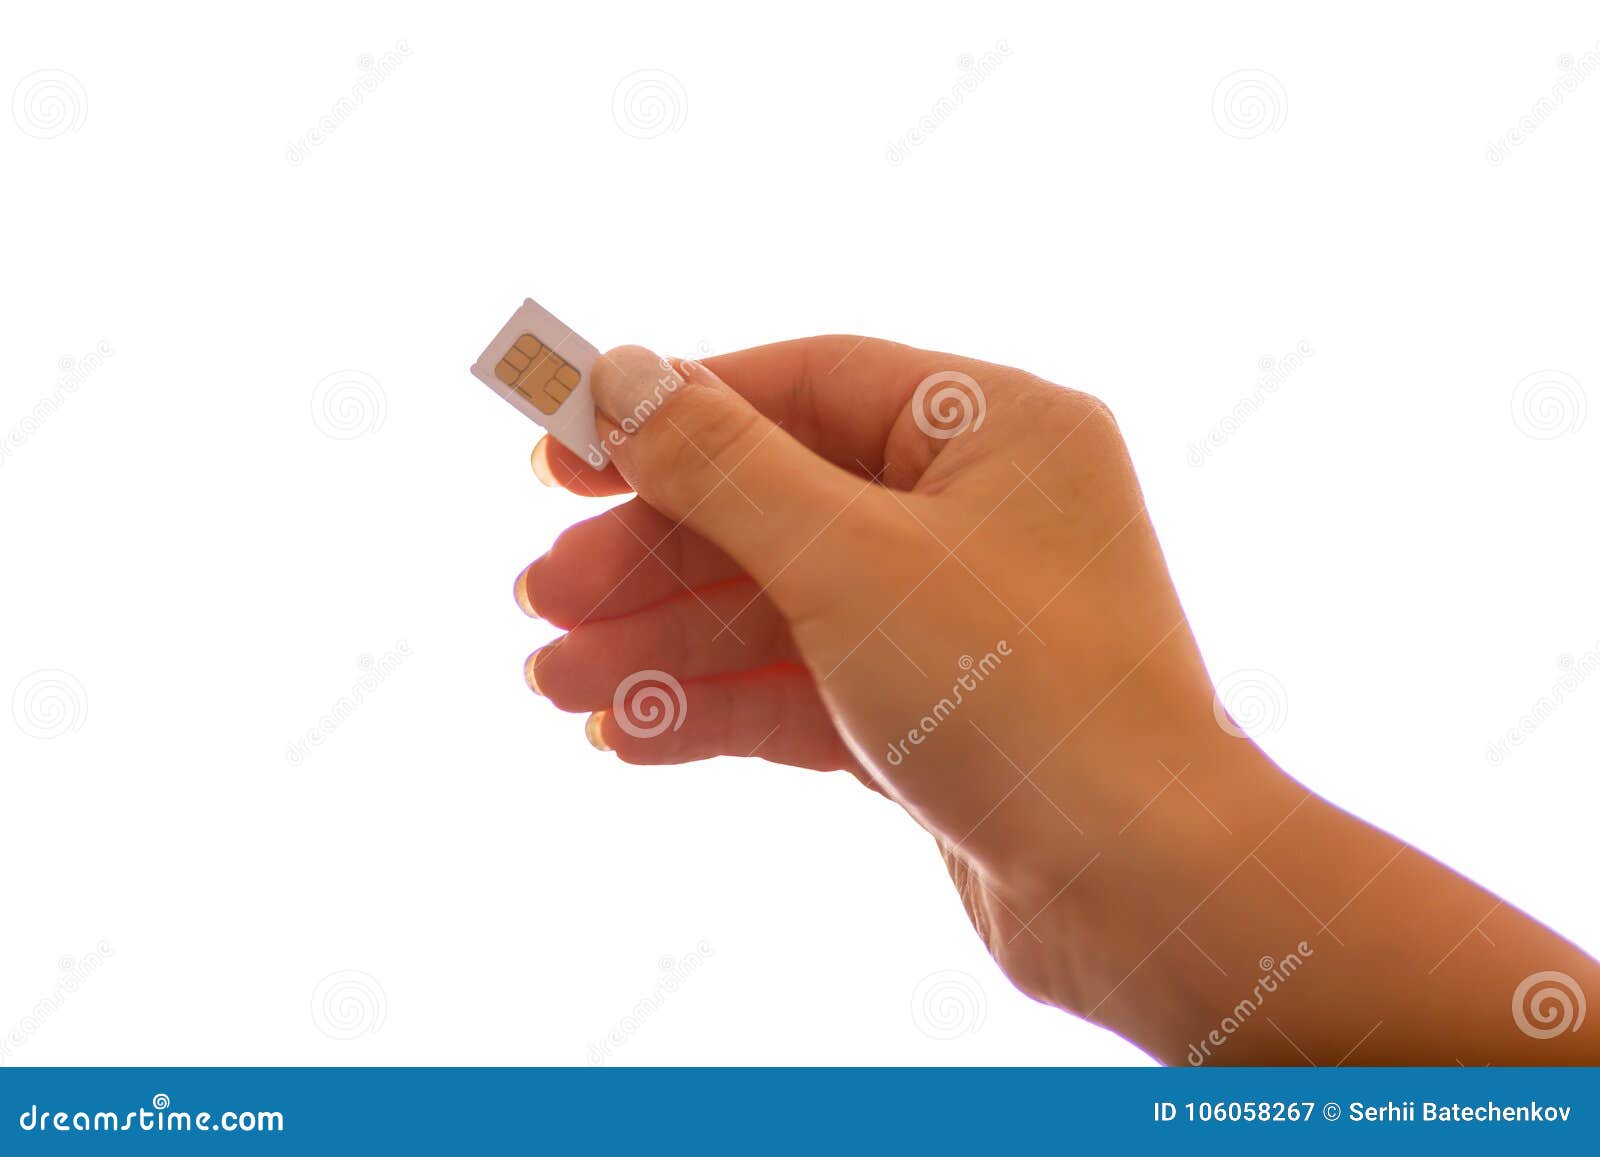 Female Hand Holding White SIM Card Stock Image - Image of finger, data